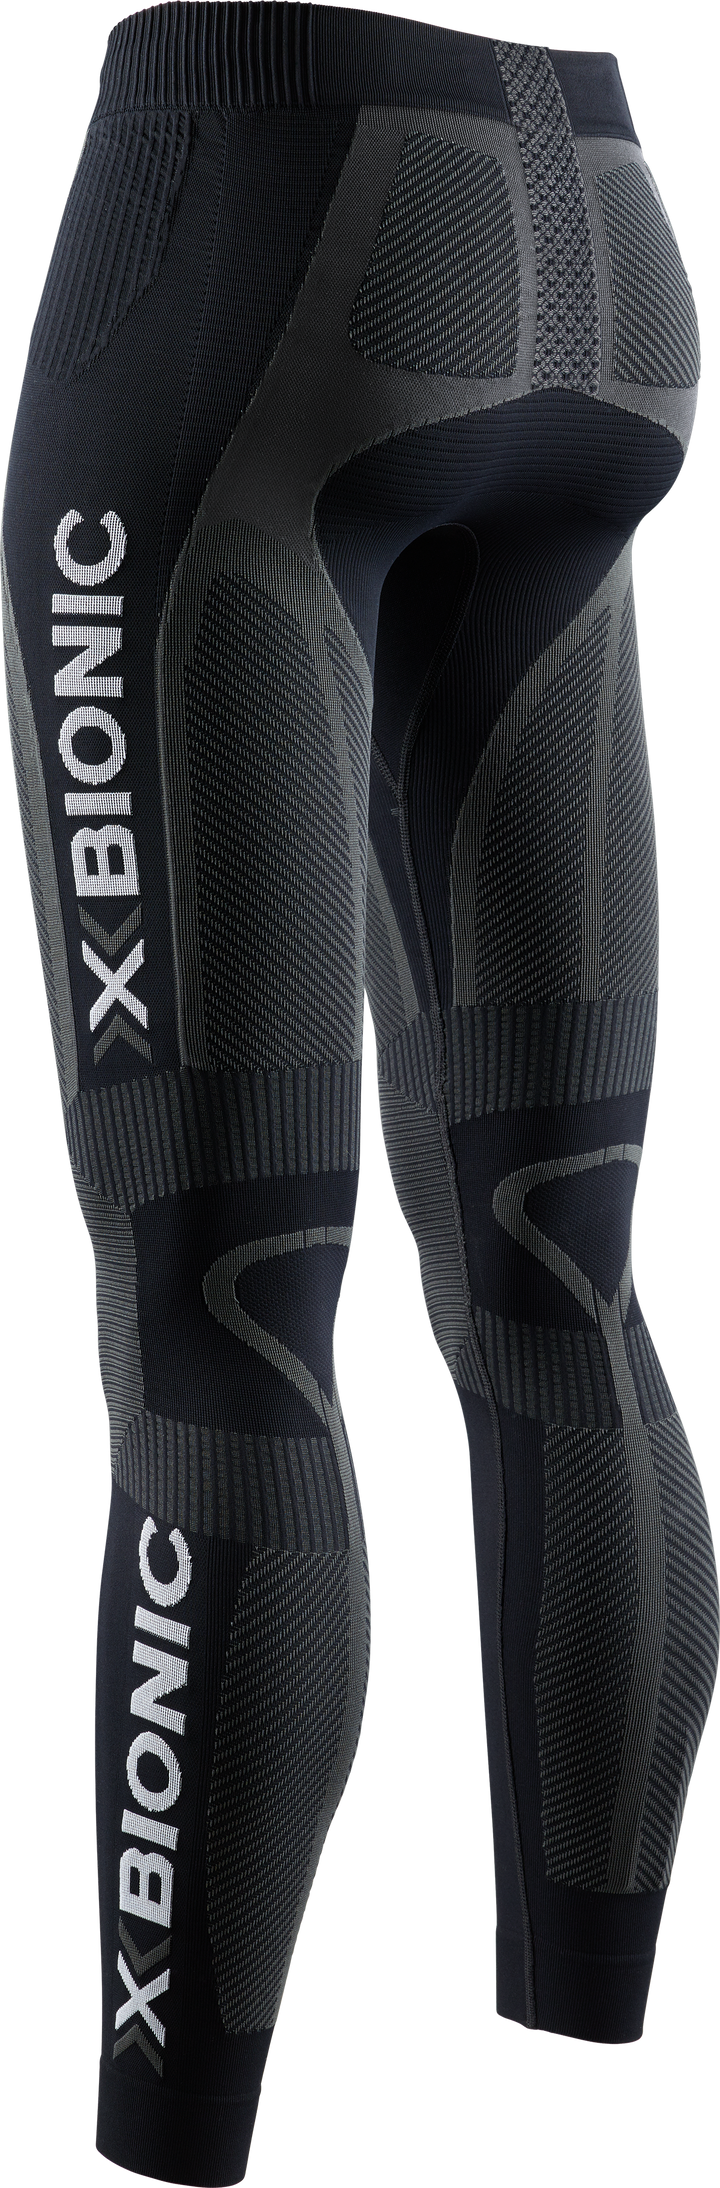 X-BIONIC® THE TRICK 4.0 RUNNING PANTS WMN